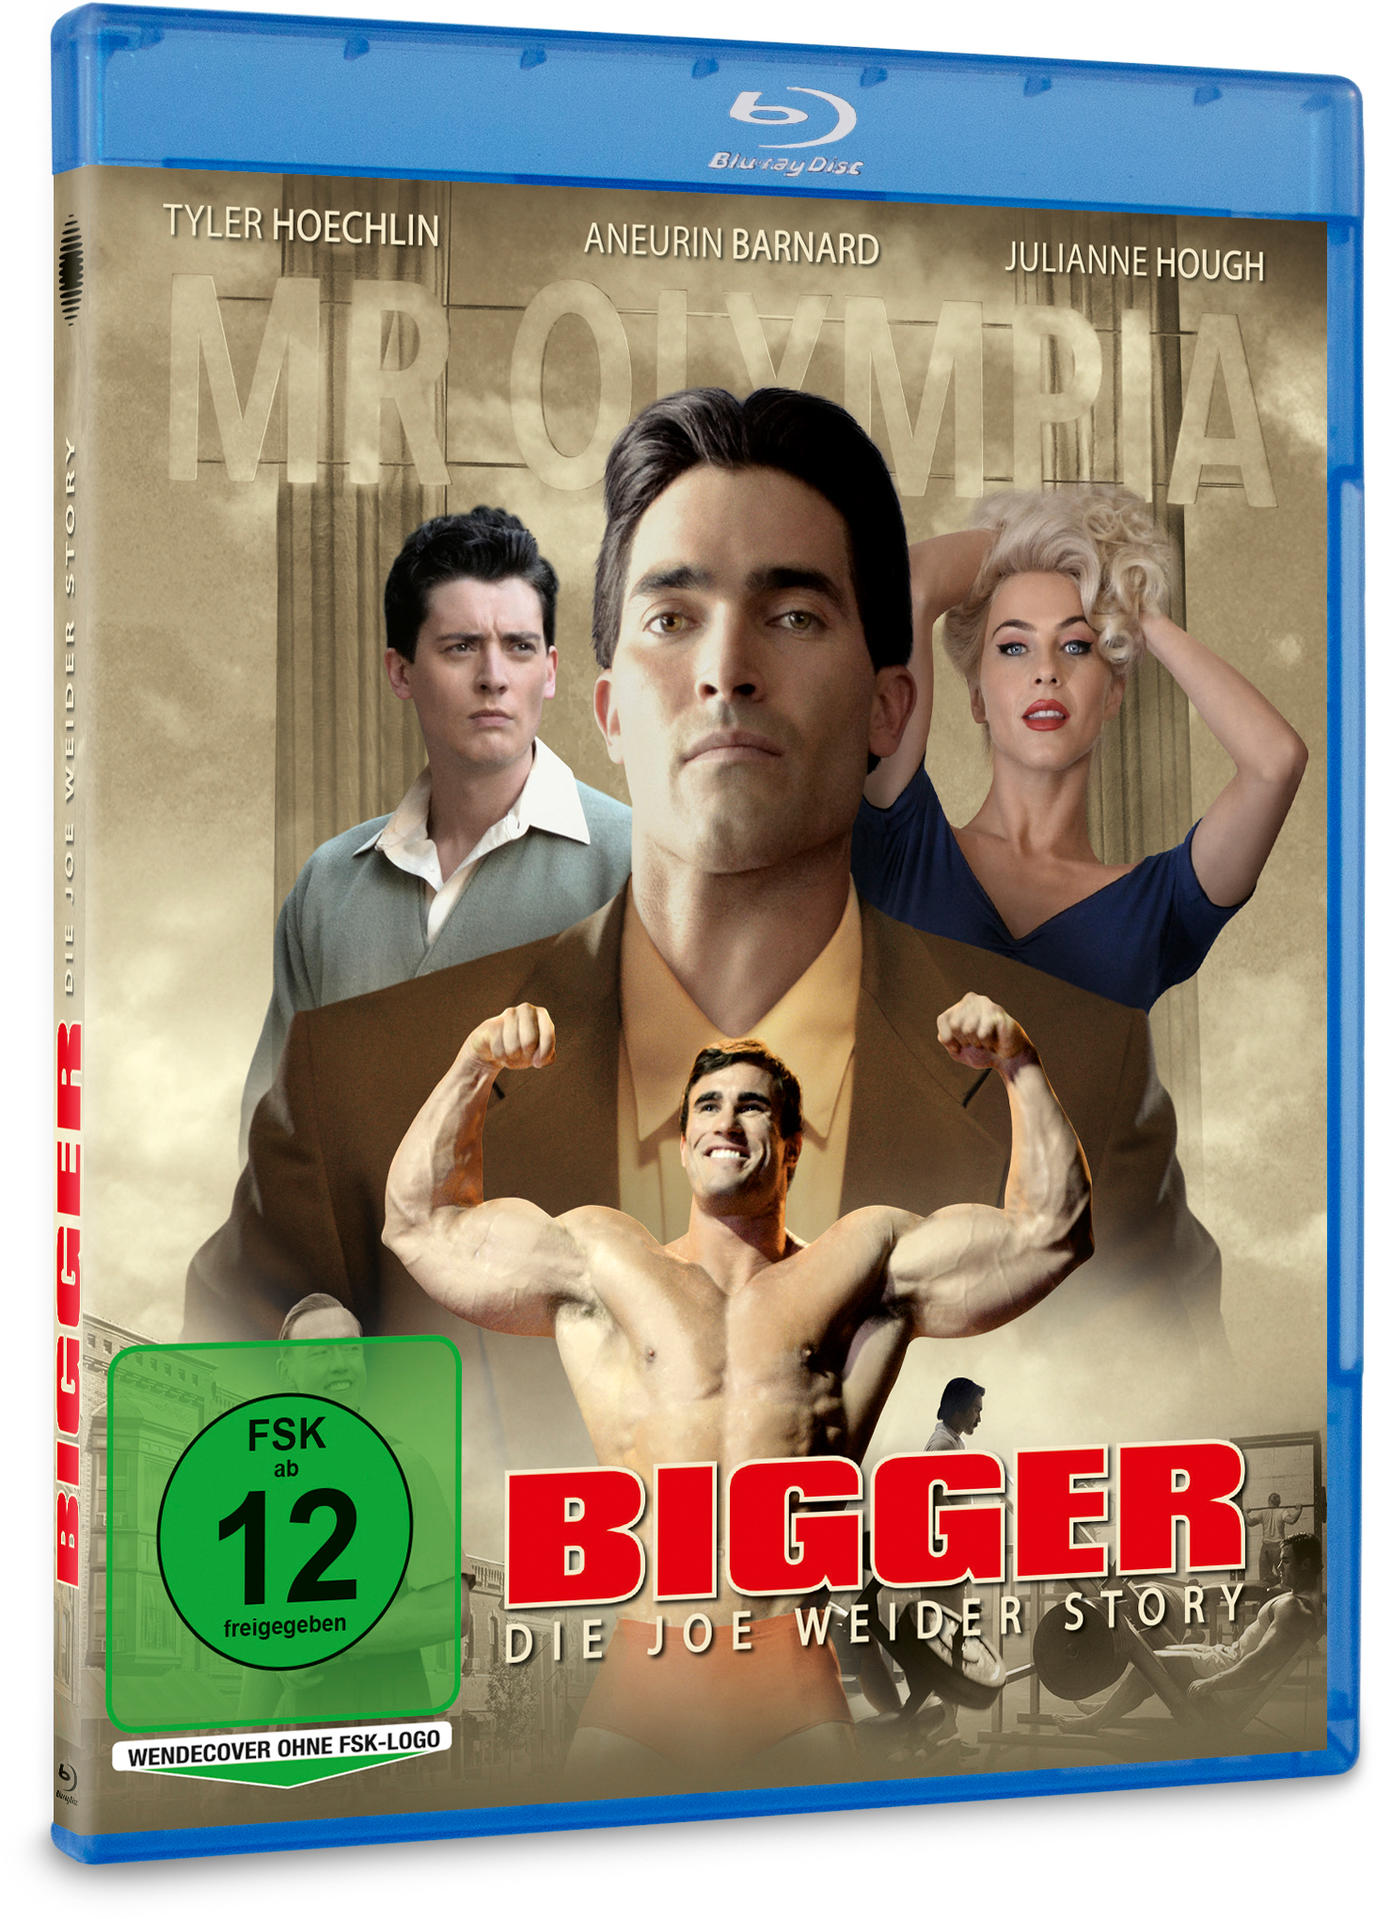 Weider Bigger - Joe Story Die Blu-ray